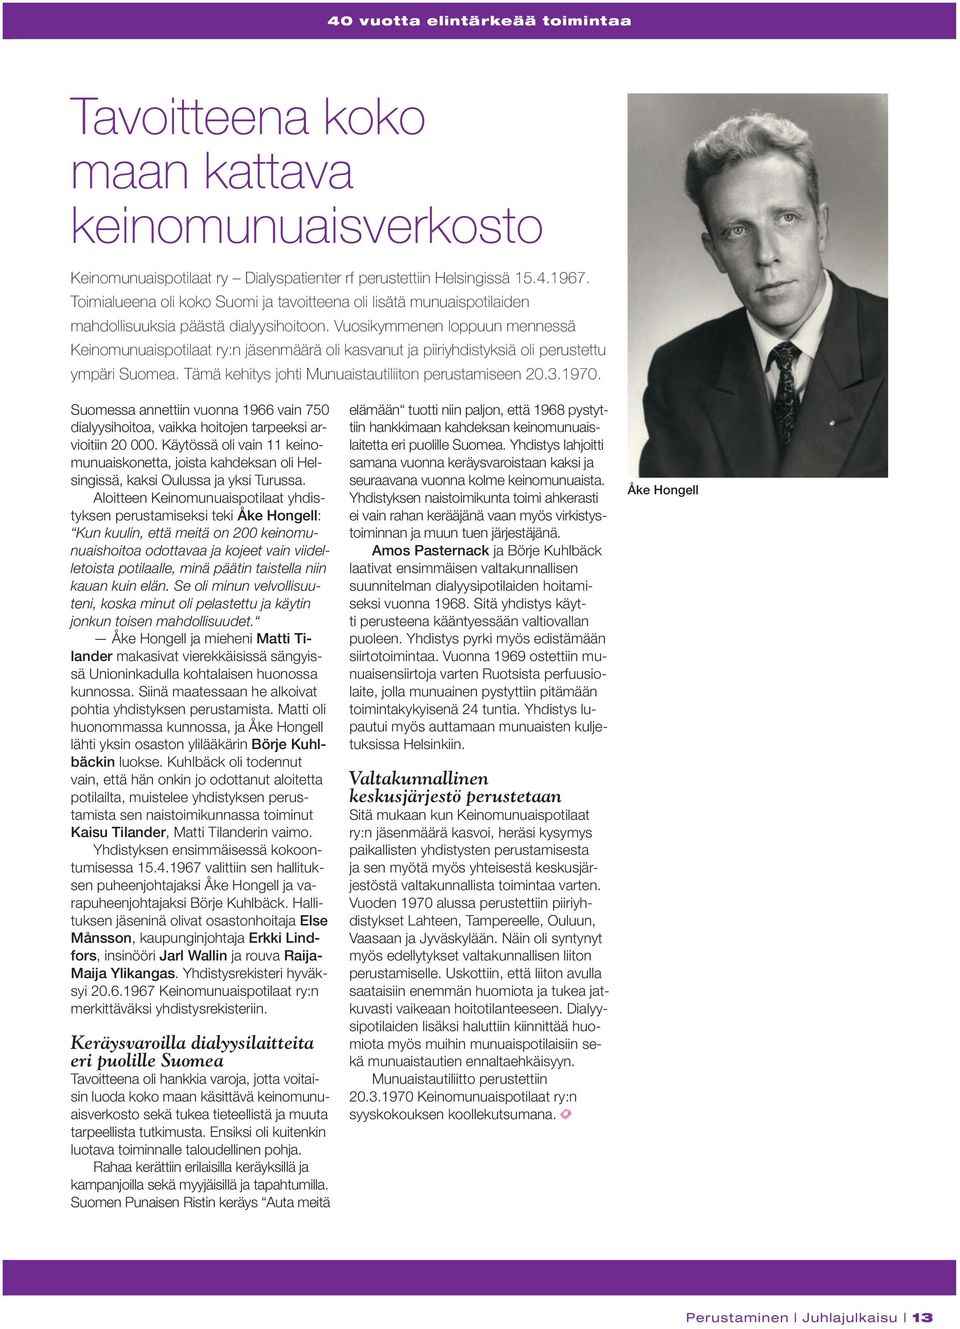 Vuosikymmenen loppuun mennessä Keinomunuaispotilaat ry:n jäsenmäärä oli kasvanut ja piiriyhdistyksiä oli perustettu ympäri Suomea. Tämä kehitys johti Munuaistautiliiton perustamiseen 20.3.1970.